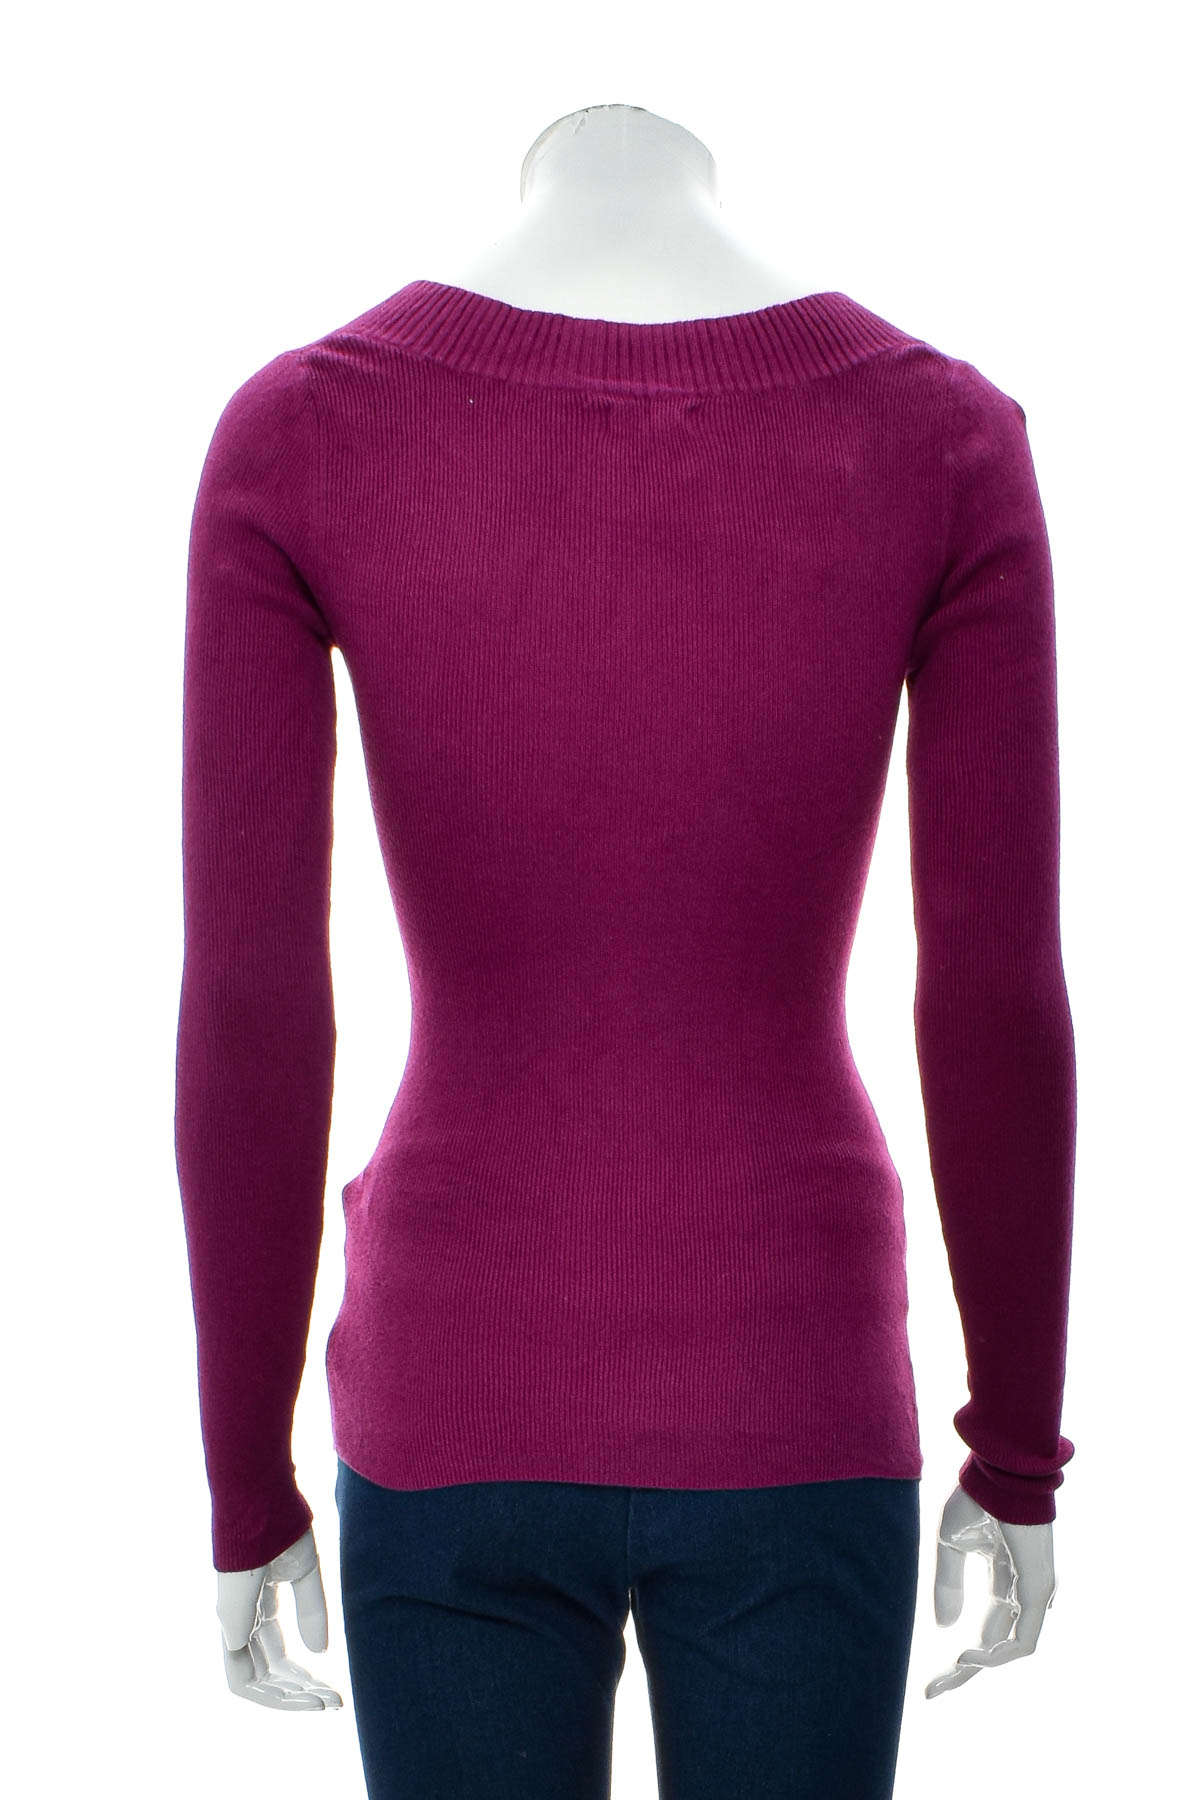 Women's sweater - Express - 1